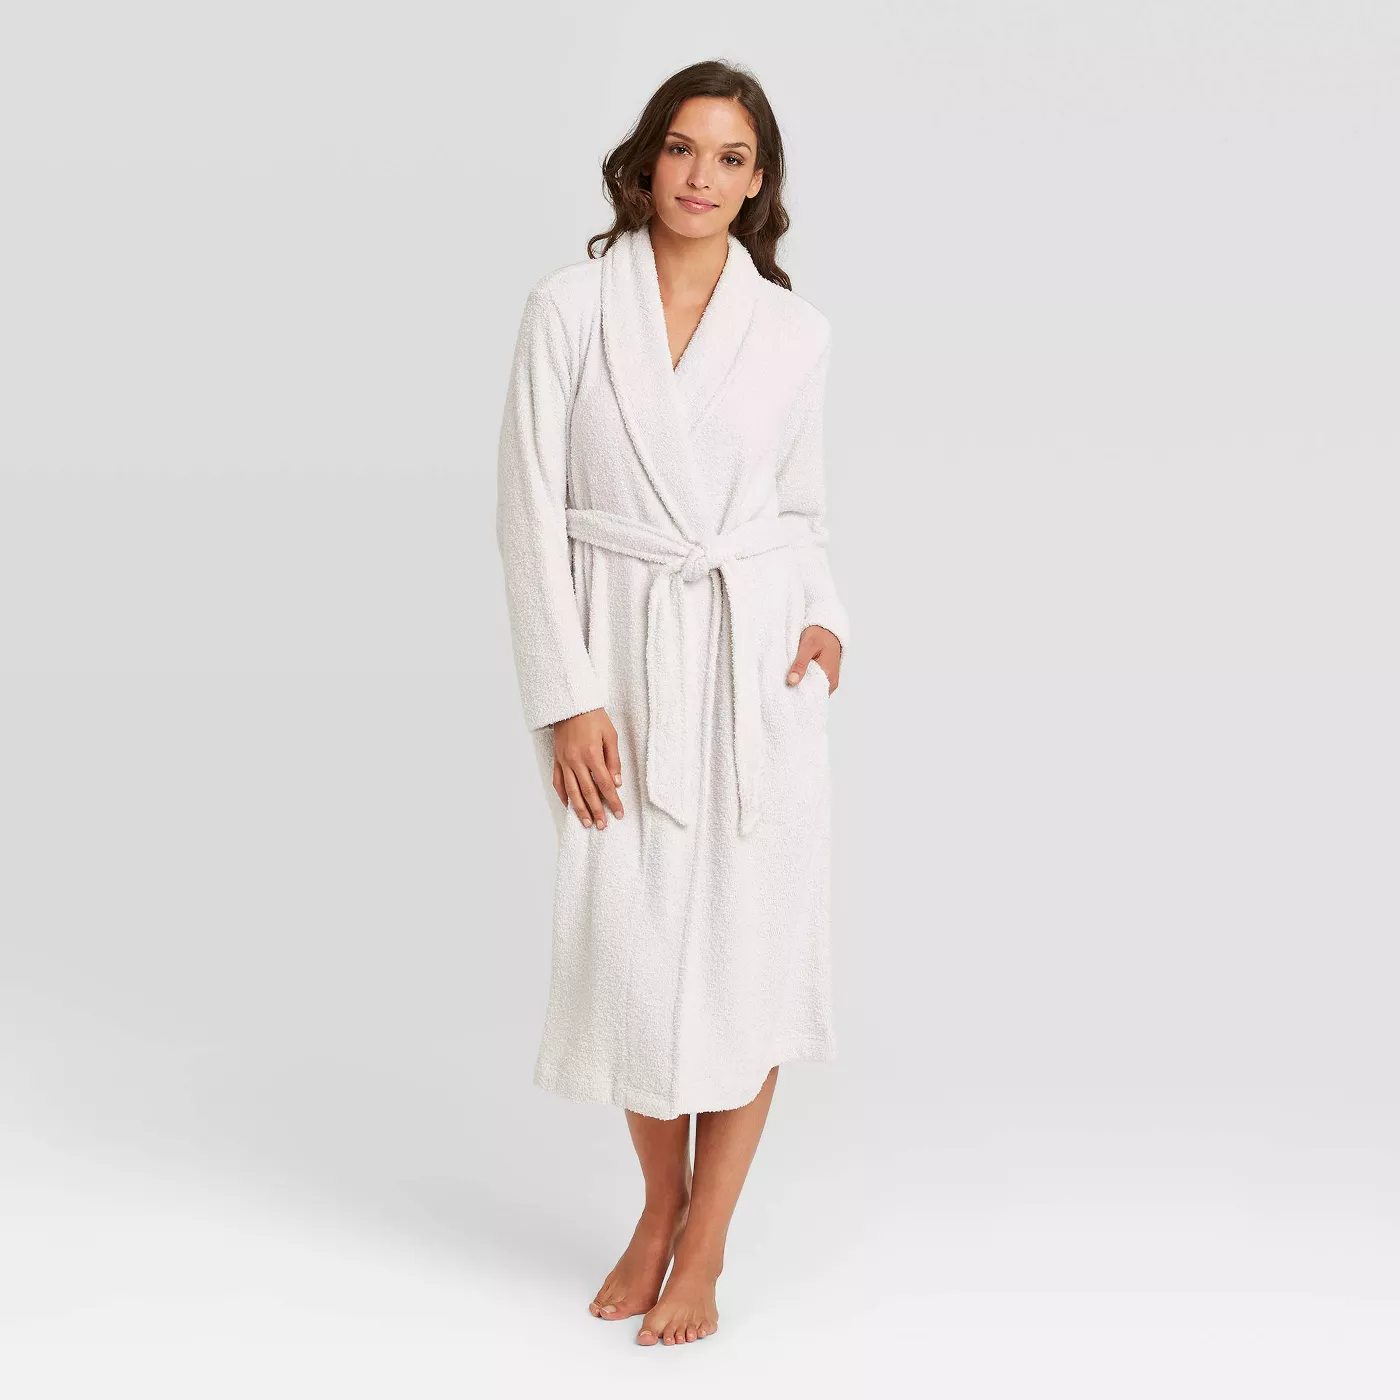 A woman modeling a white, chenille bathrobe